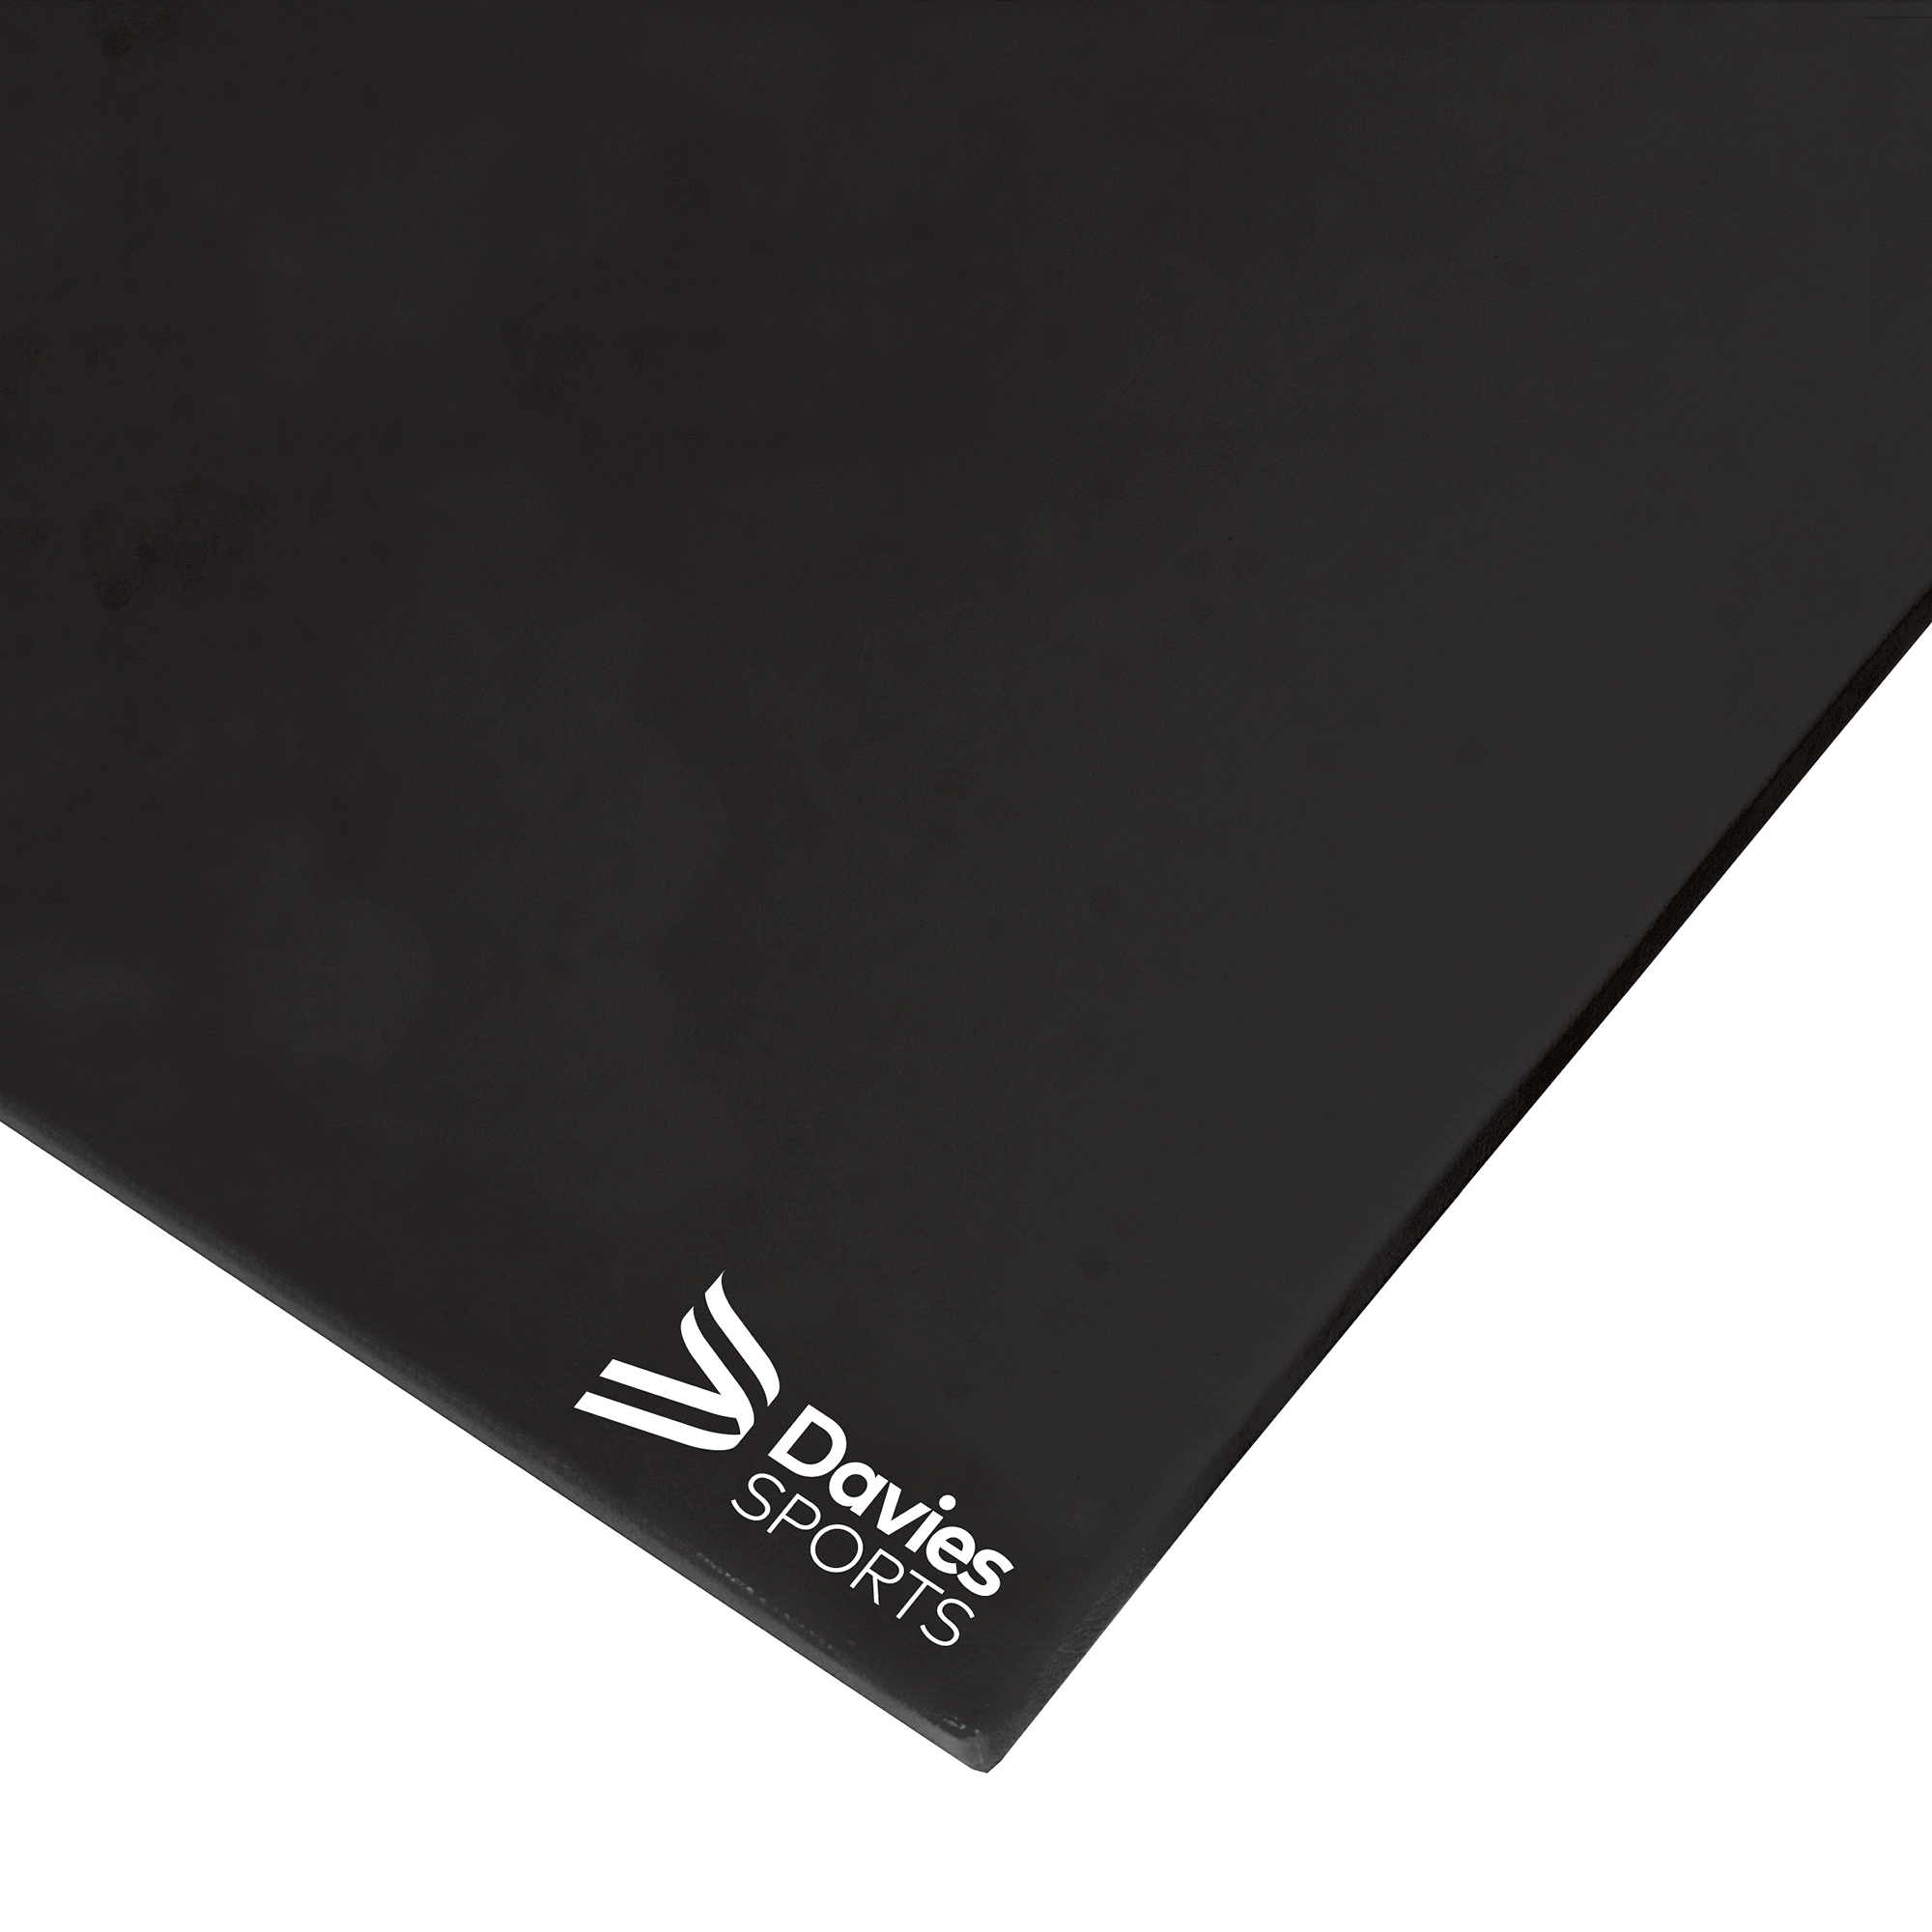 Davies Sports Agility Mat Standard Black - 1.83m x 1.22m x 50mm